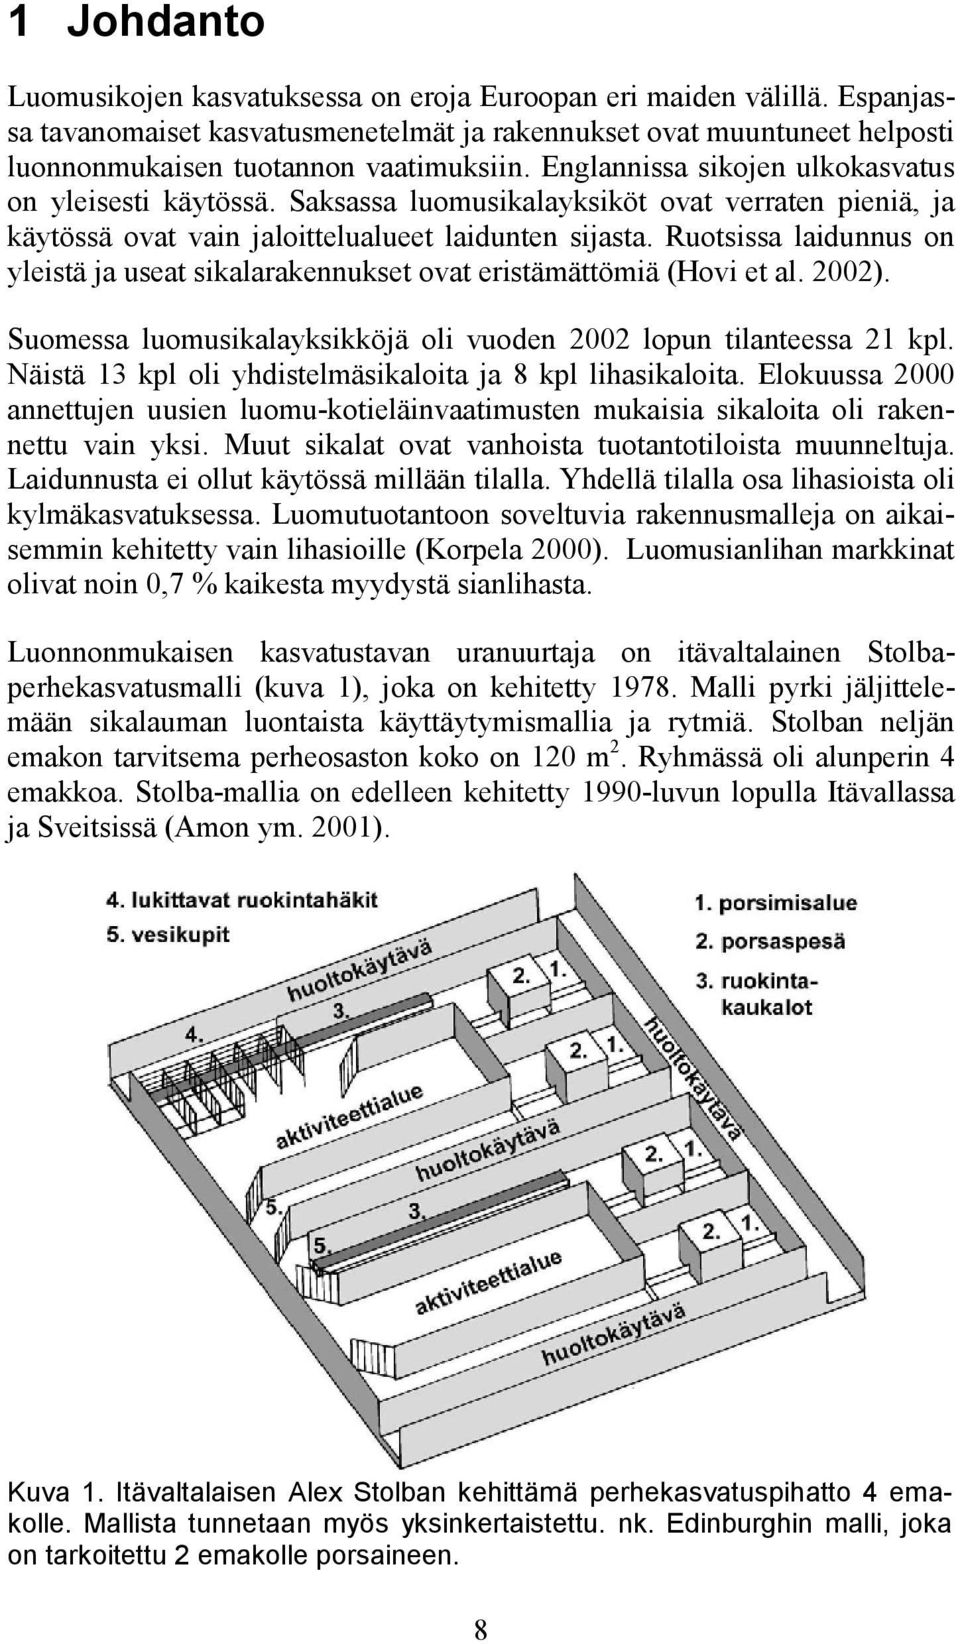 Ruotsissa laidunnus on yleistä ja useat sikalarakennukset ovat eristämättömiä (Hovi et al. 2002). Suomessa luomusikalayksikköjä oli vuoden 2002 lopun tilanteessa 21 kpl.